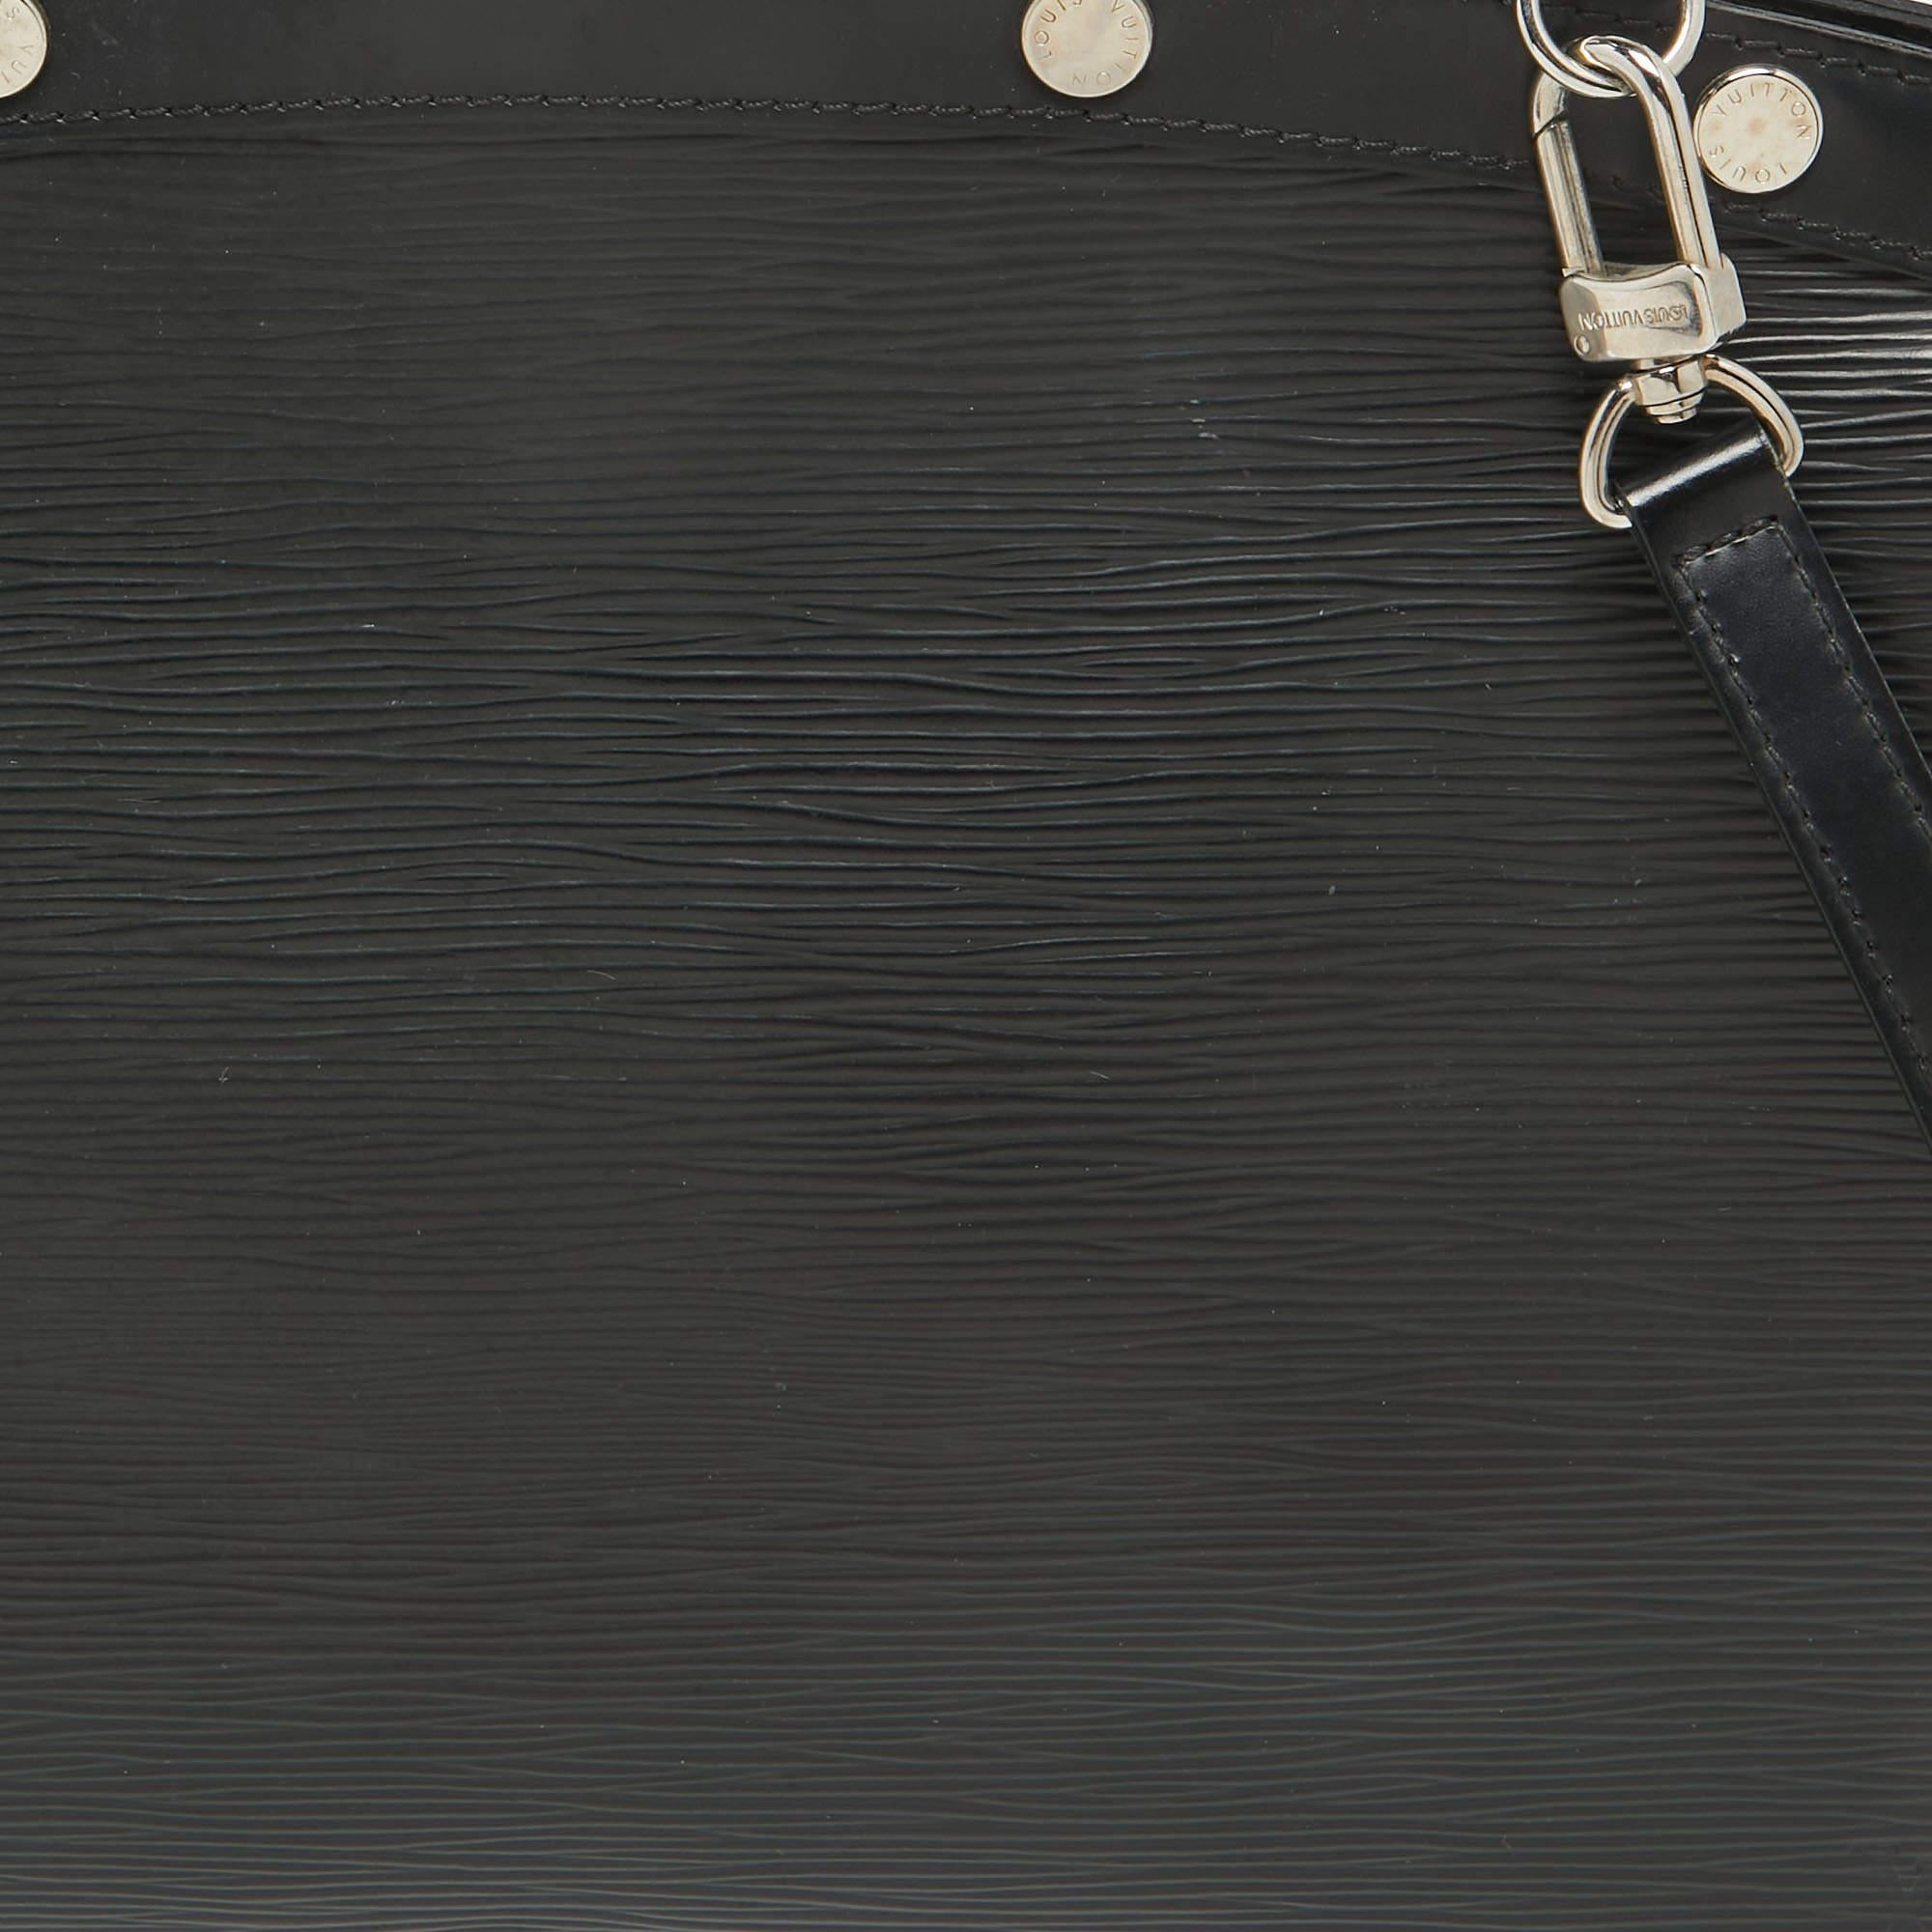 Louis Vuitton Black Epi Leather Brea MM Bag For Sale 2